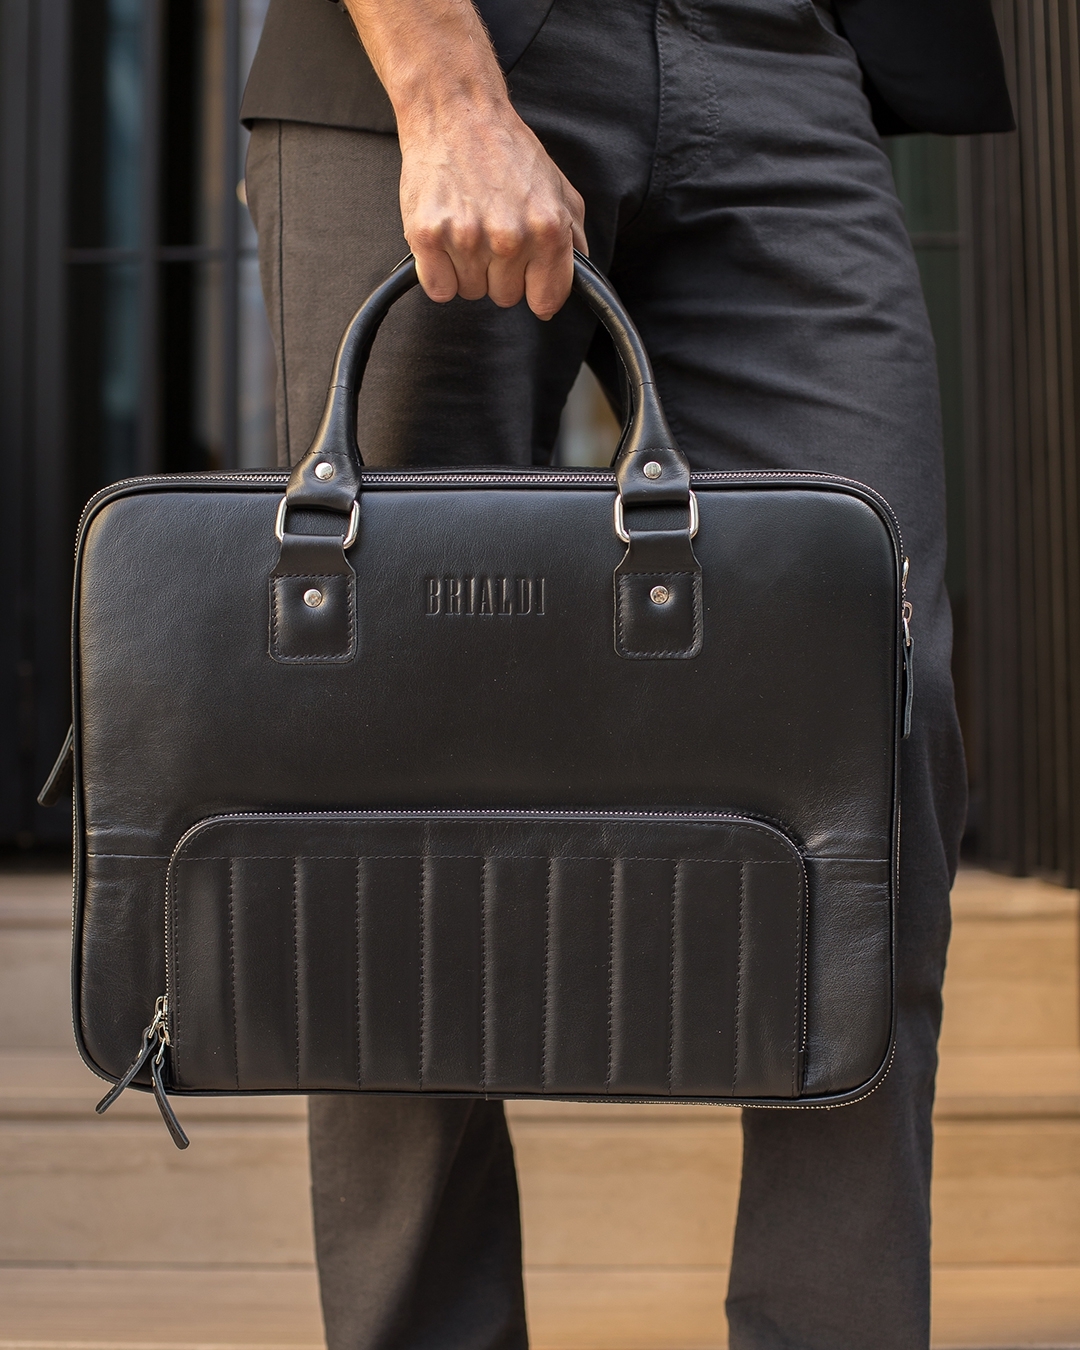 Кожаные сумки и рюкзаки - Brialdi BERING — сумка для тех, кто все время в движении 📈
⠀
Современный дизайн и умный интерьер в единой конструкции. Три стиля одновременно: деловая сумка для совещаний, ме...